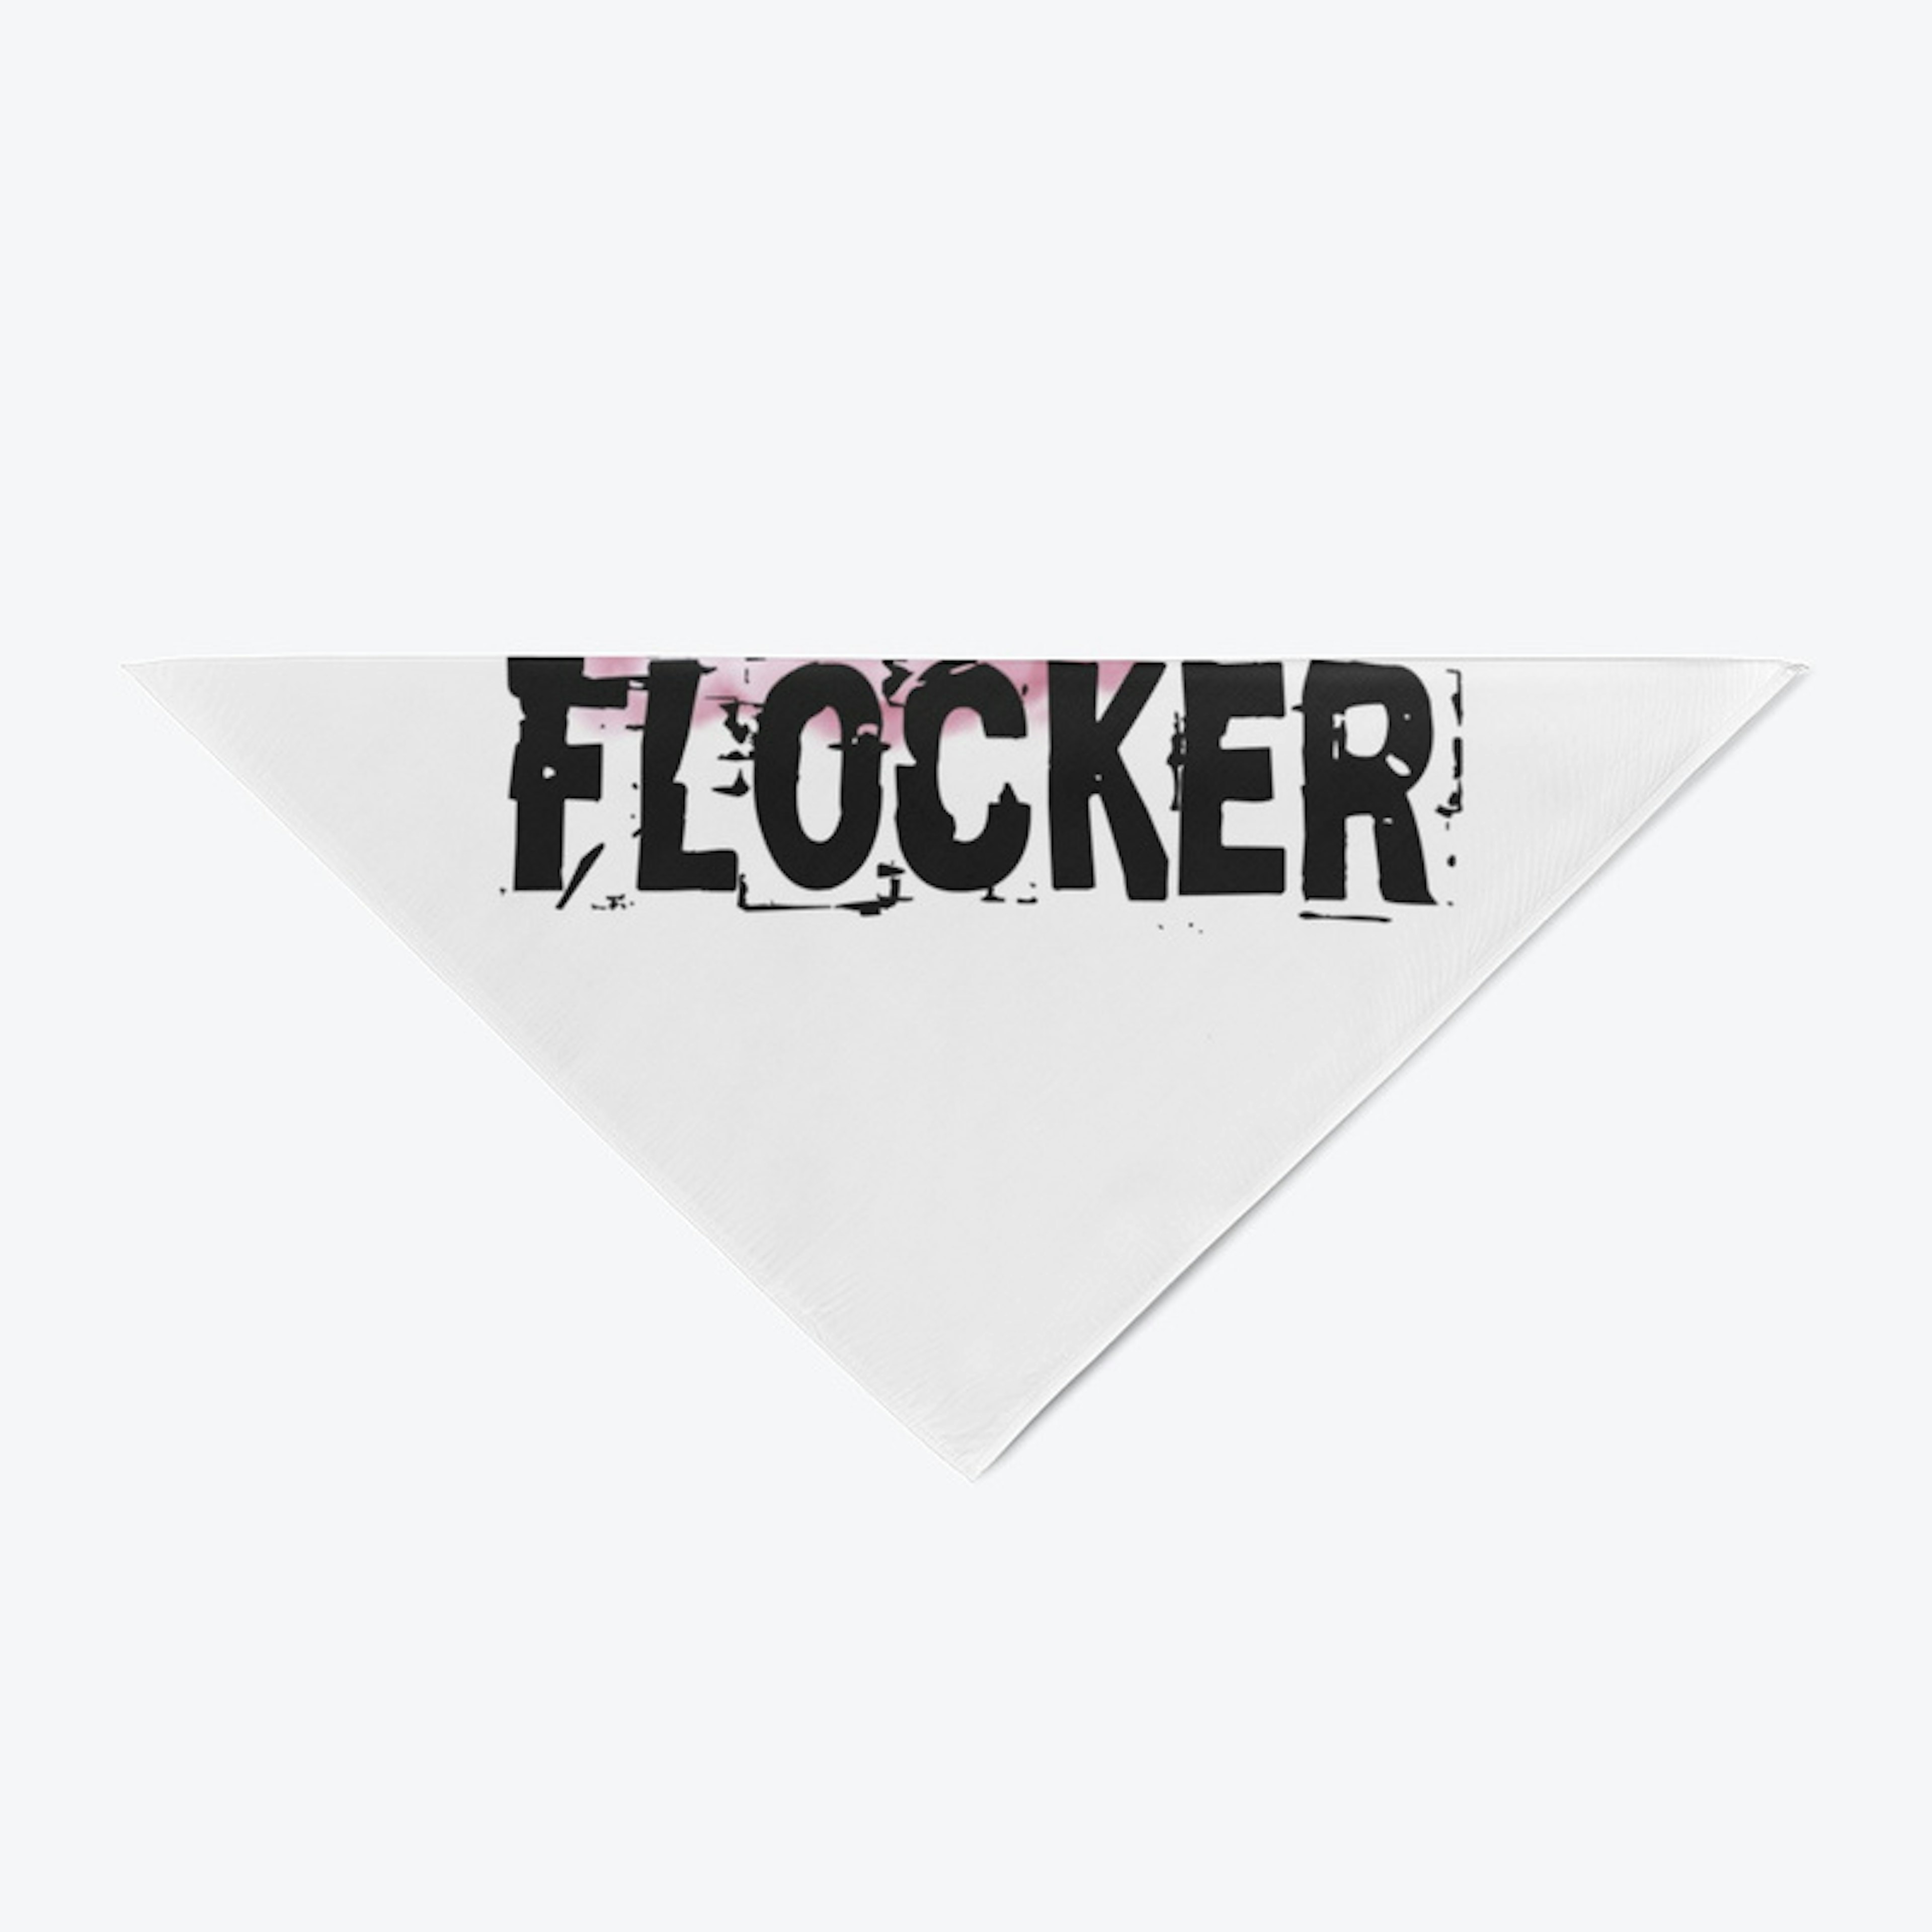 Flocker